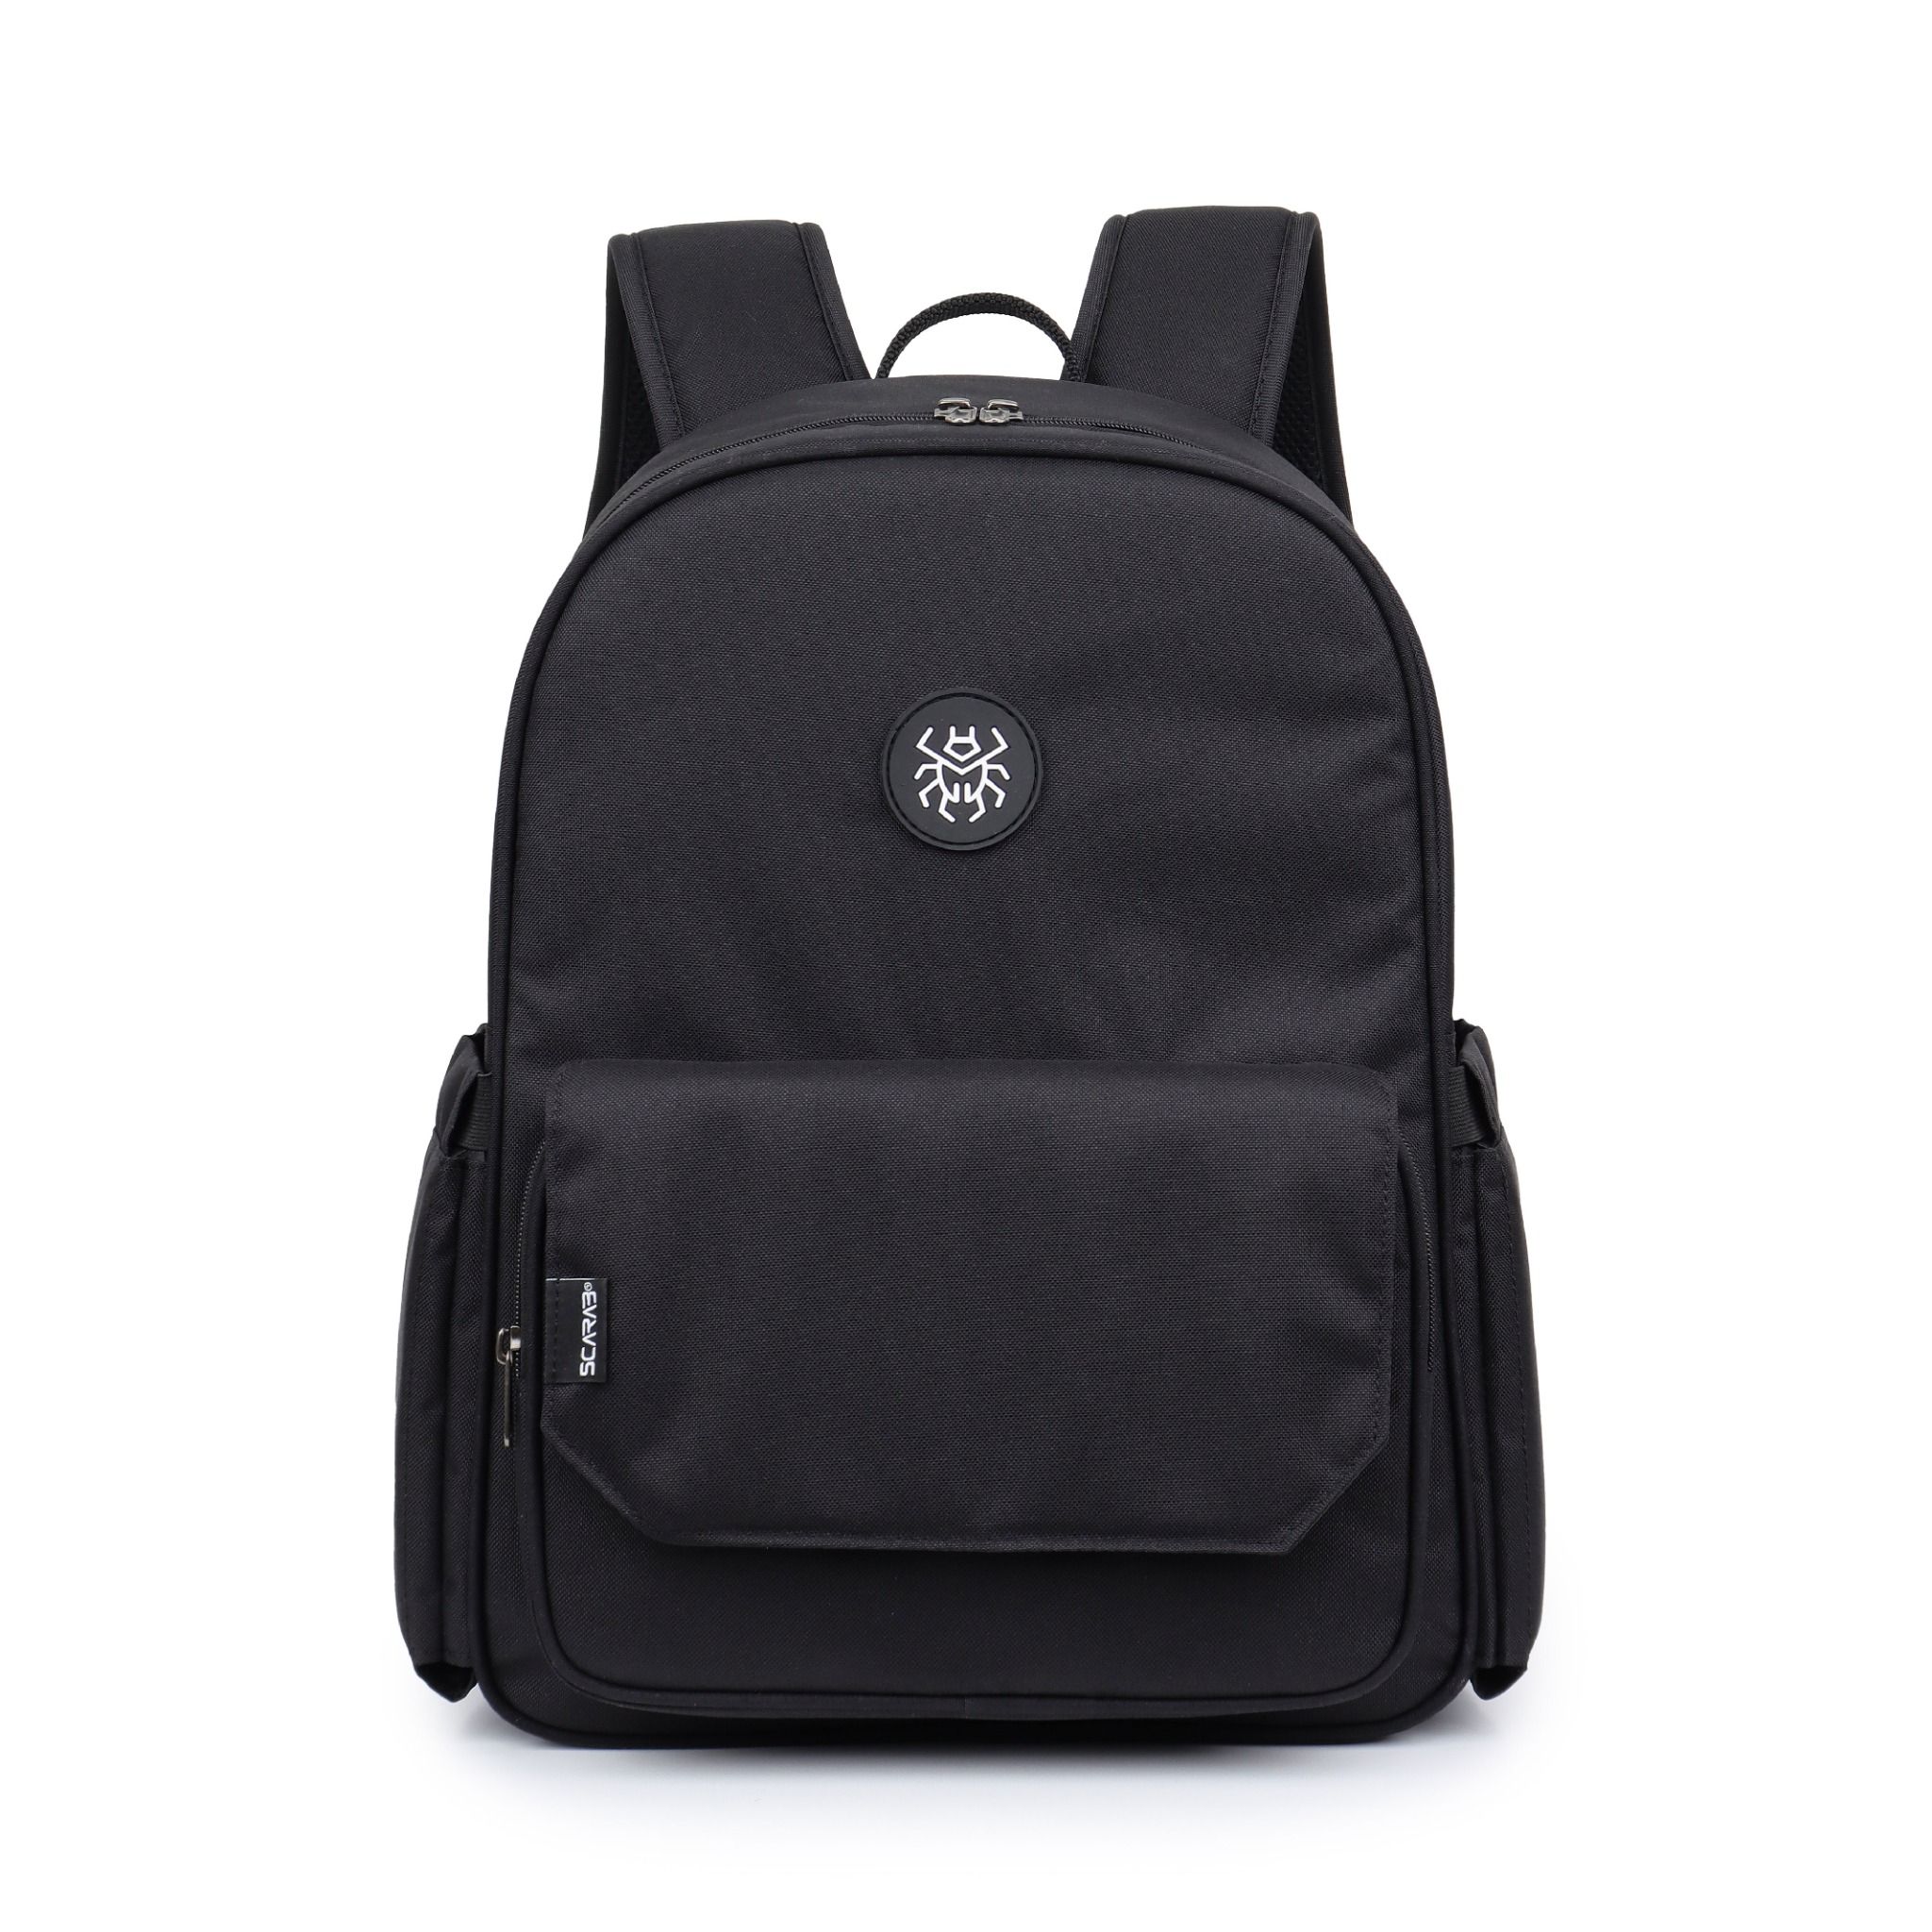  Daypack Backpack - Black 